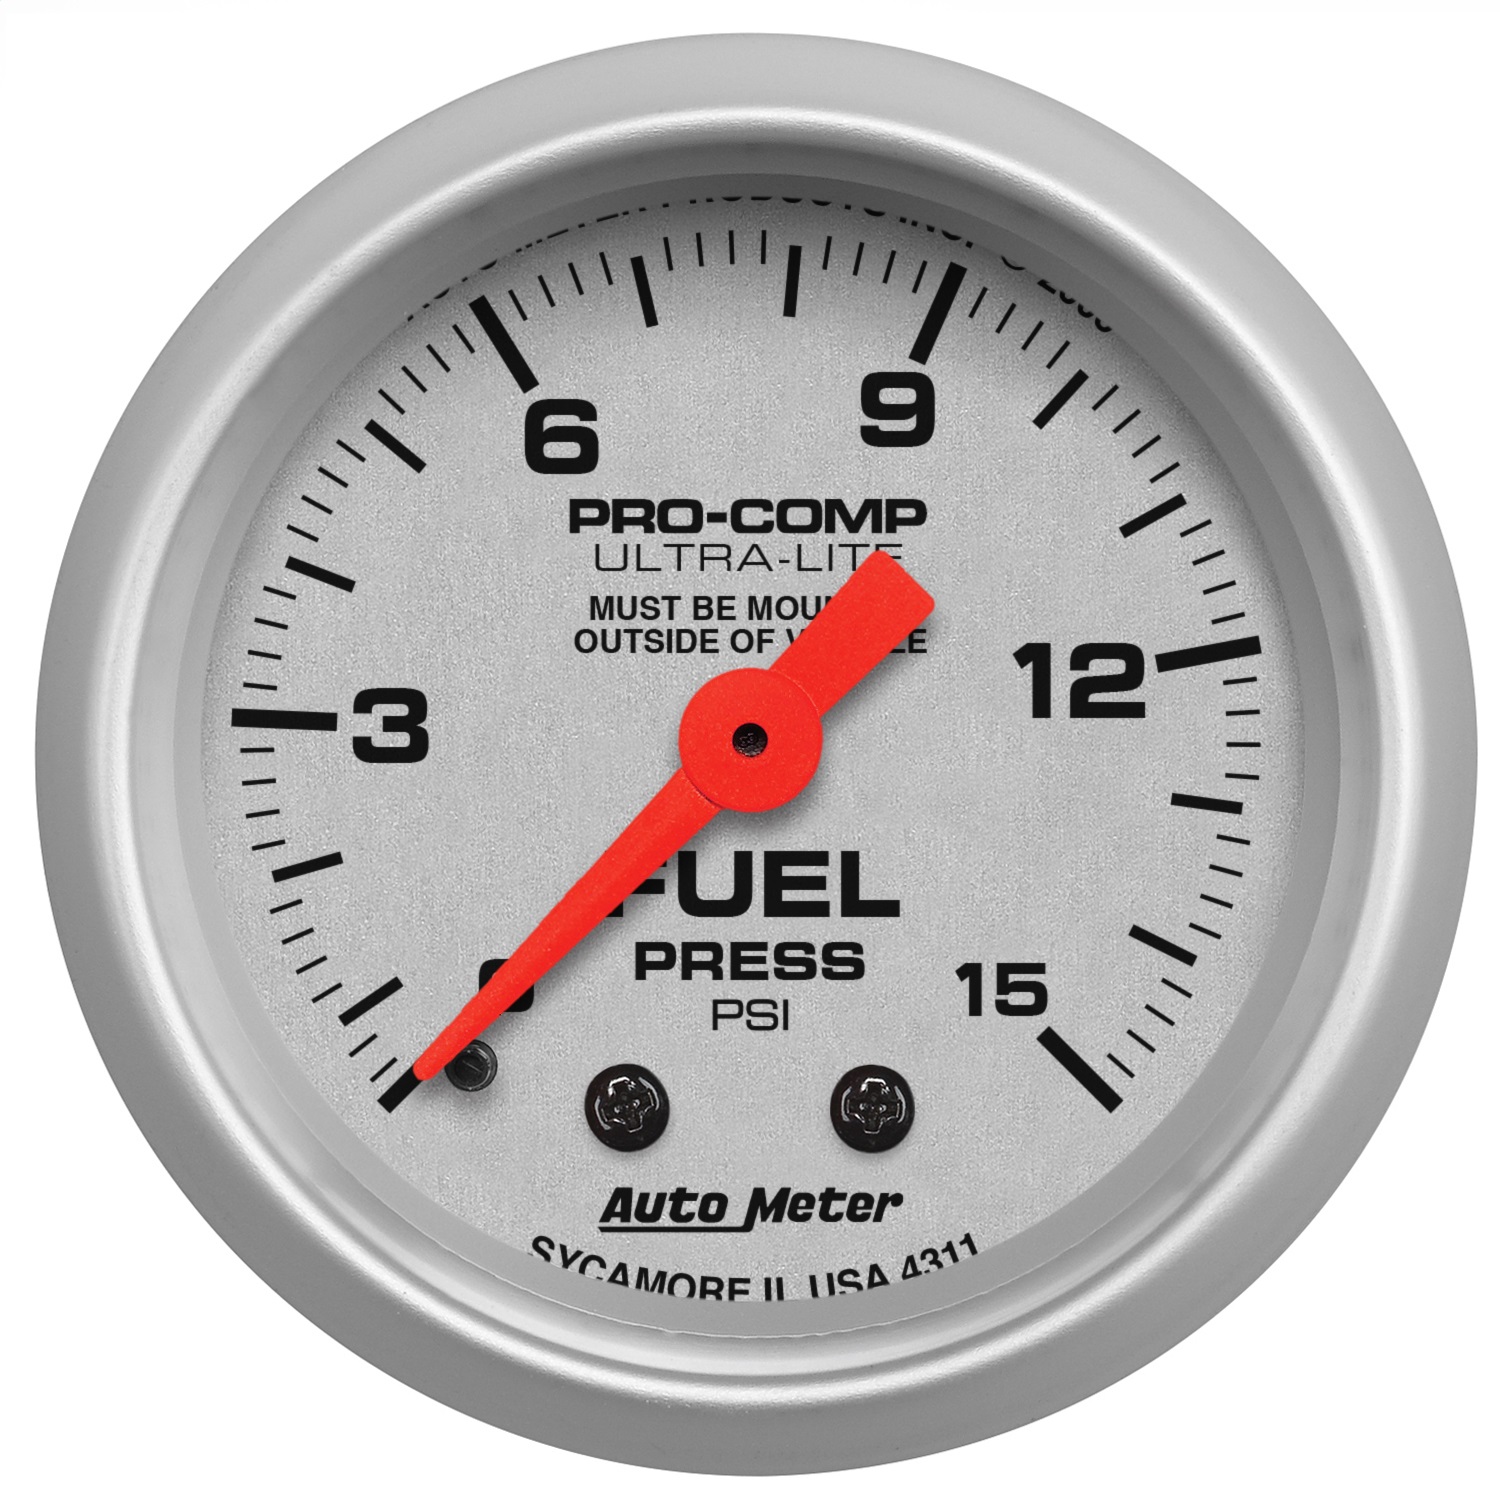 Auto Meter Auto Meter 4311 Ultra-Lite; Mechanical Fuel Pressure Gauge